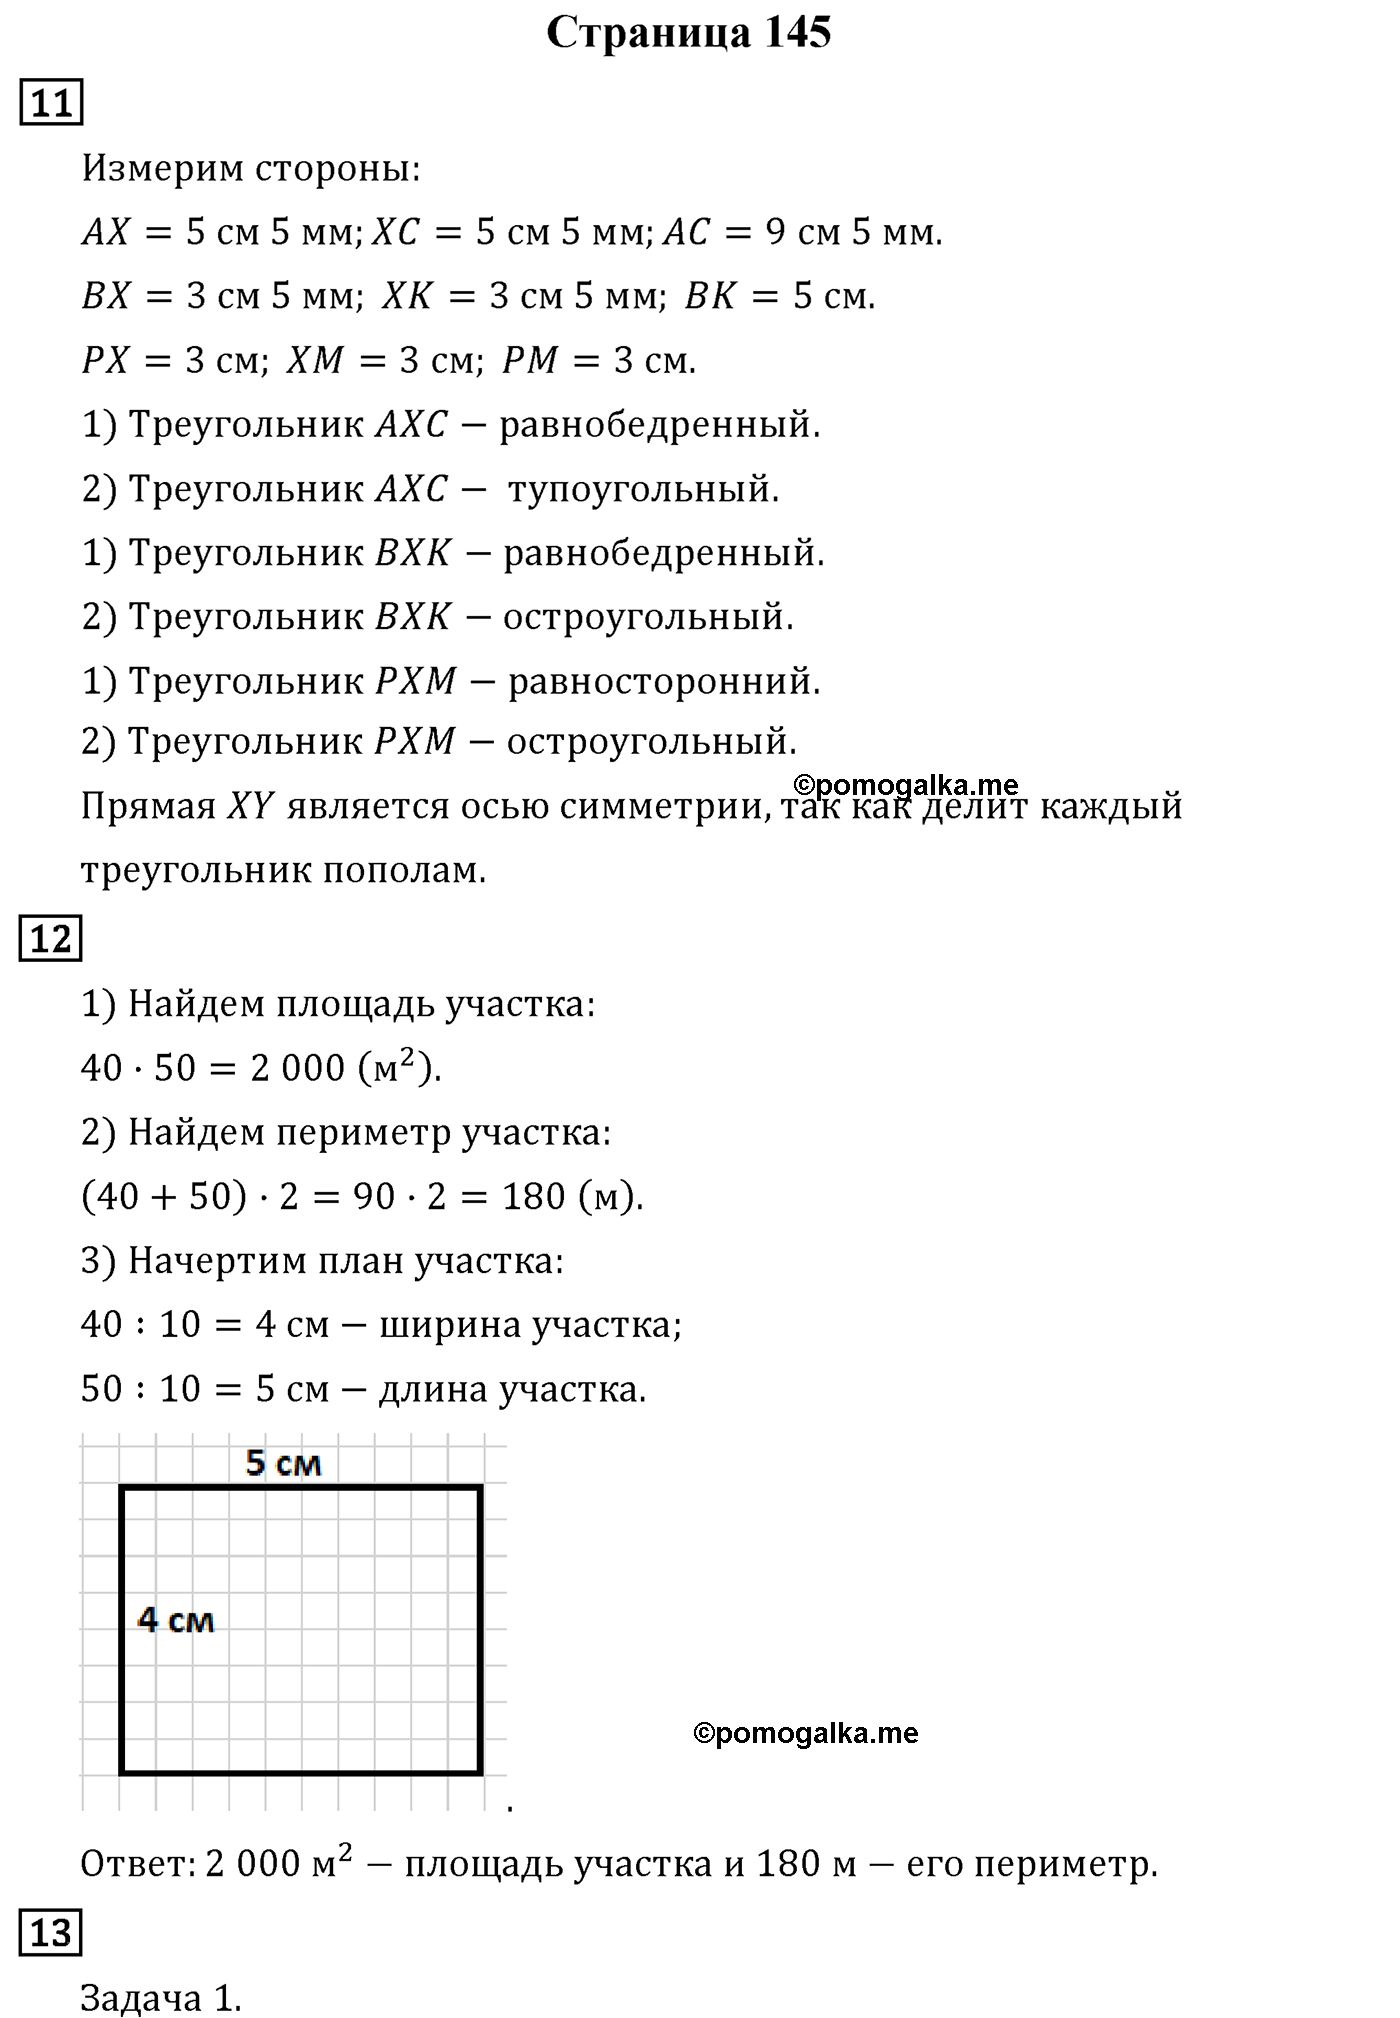 Страница 145 математика 4 класс Рудницкая часть 2